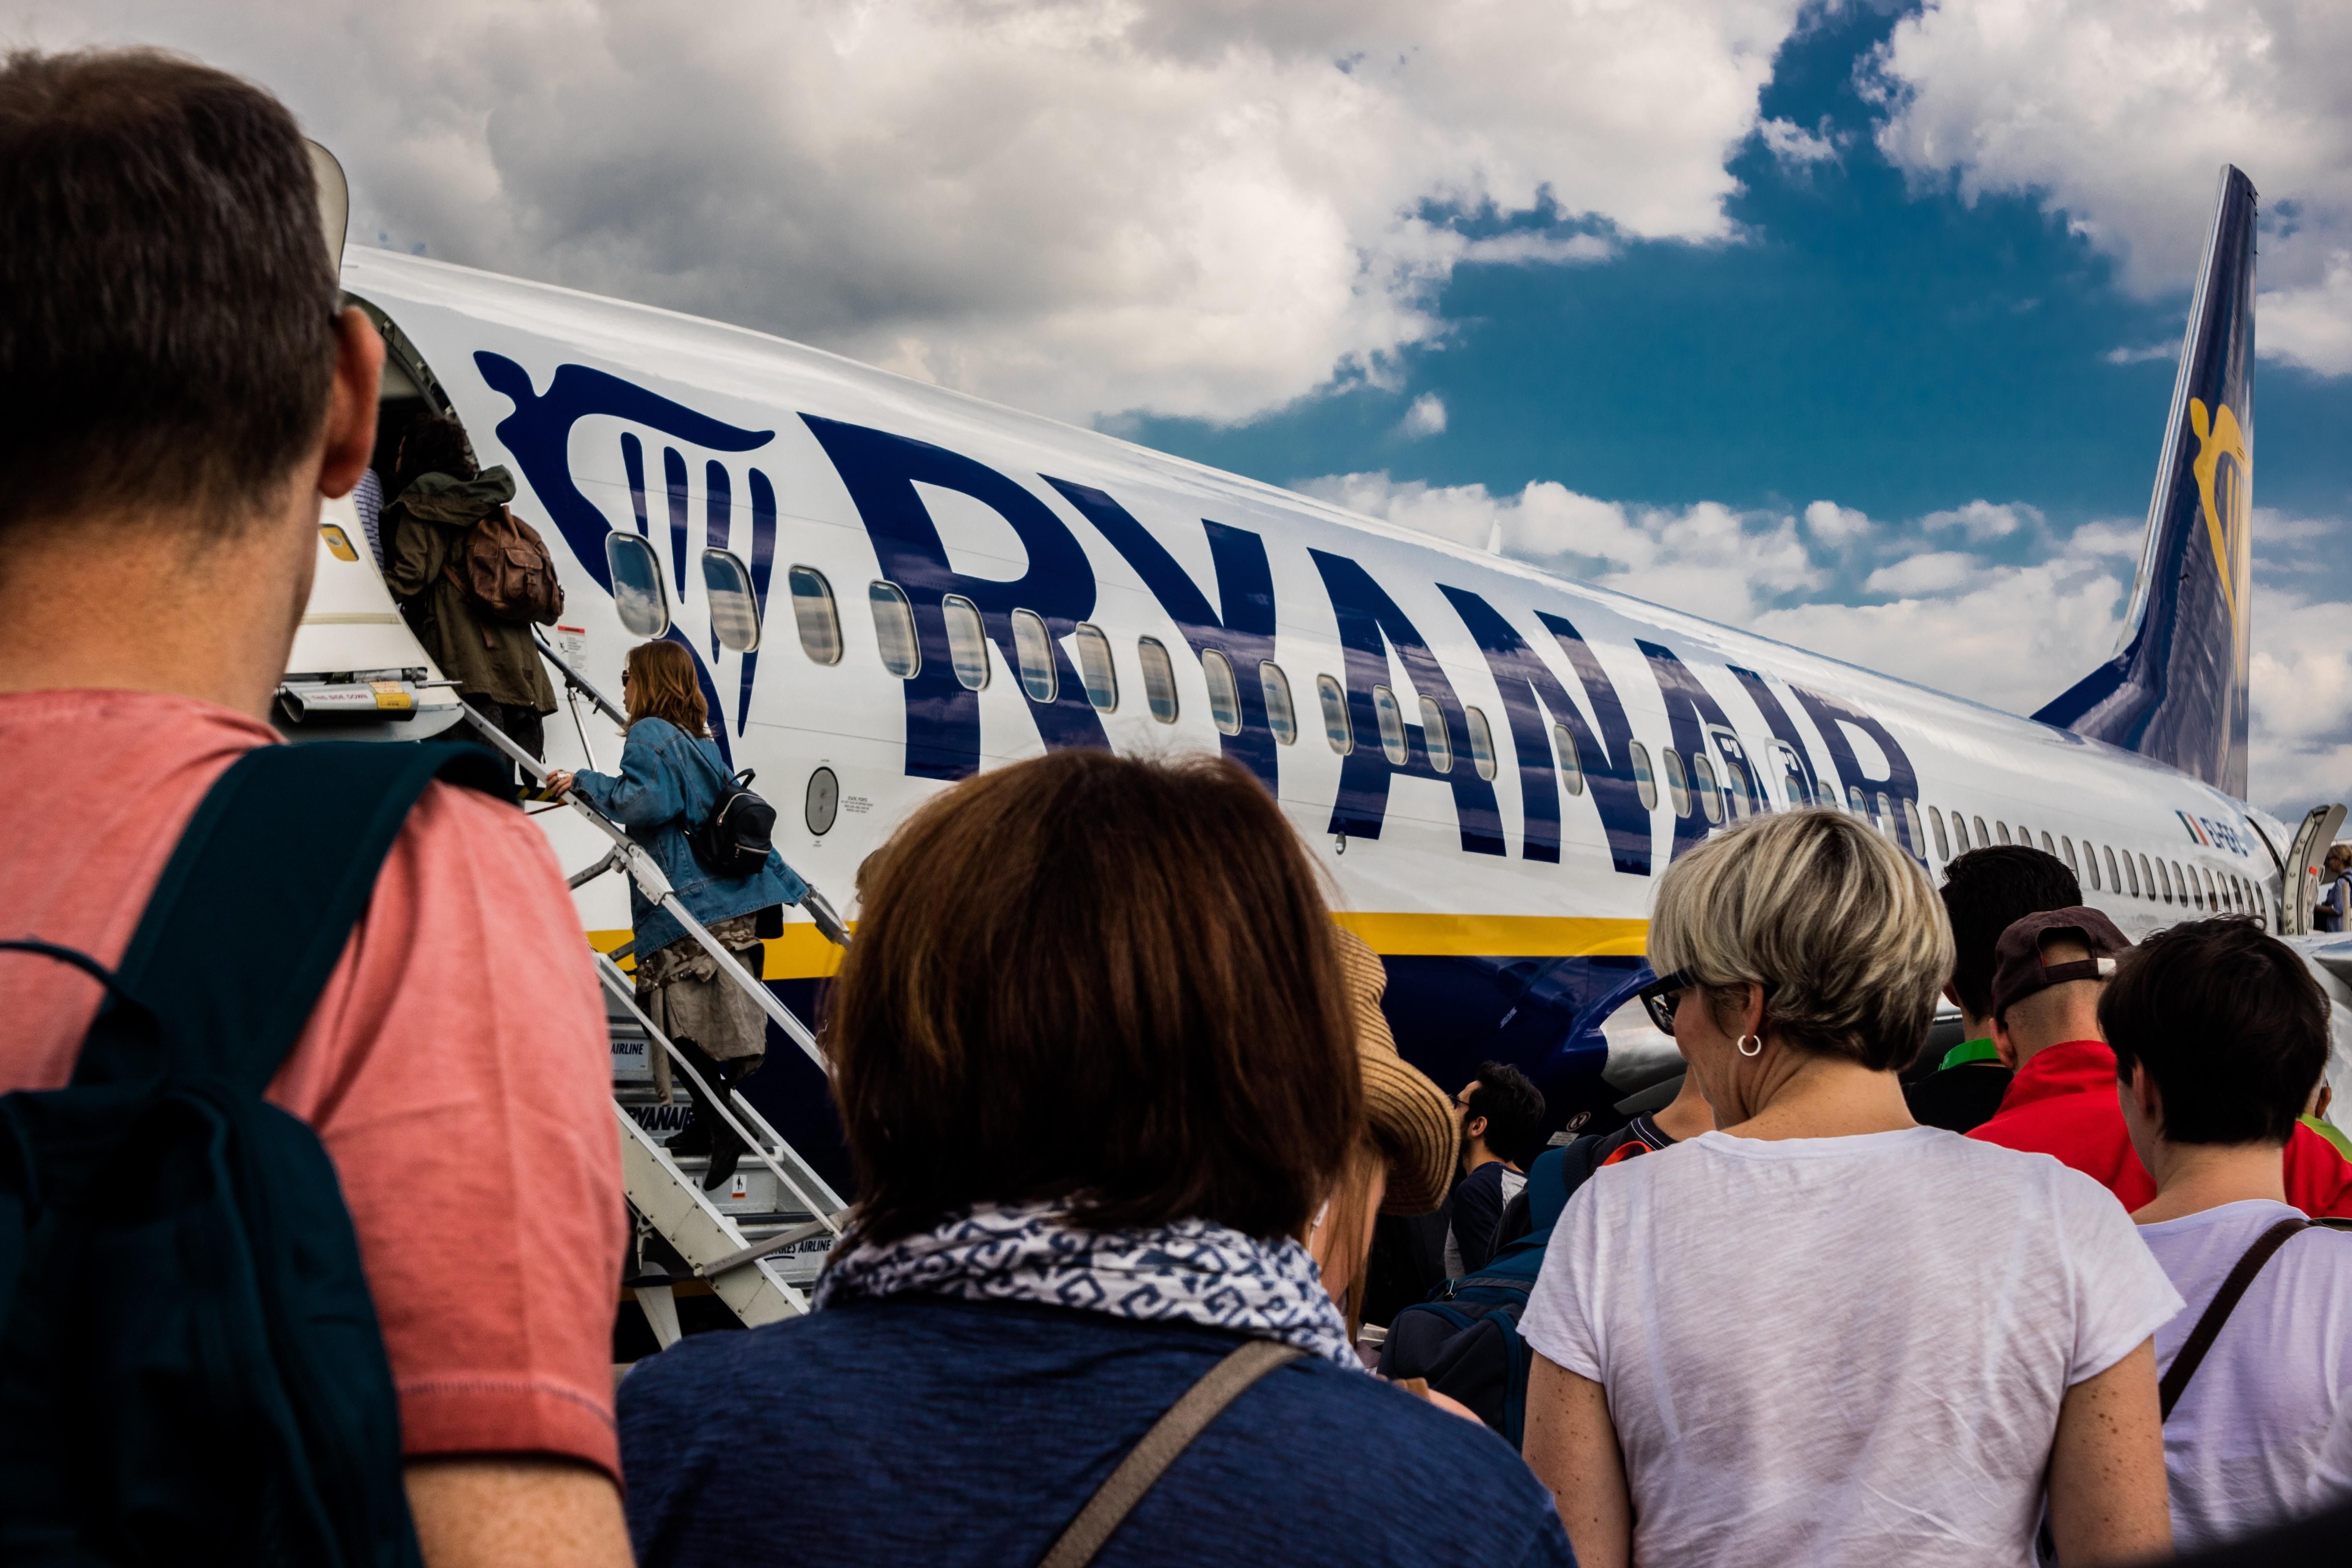 Utasok szállnak fel egy Ryanair gépre